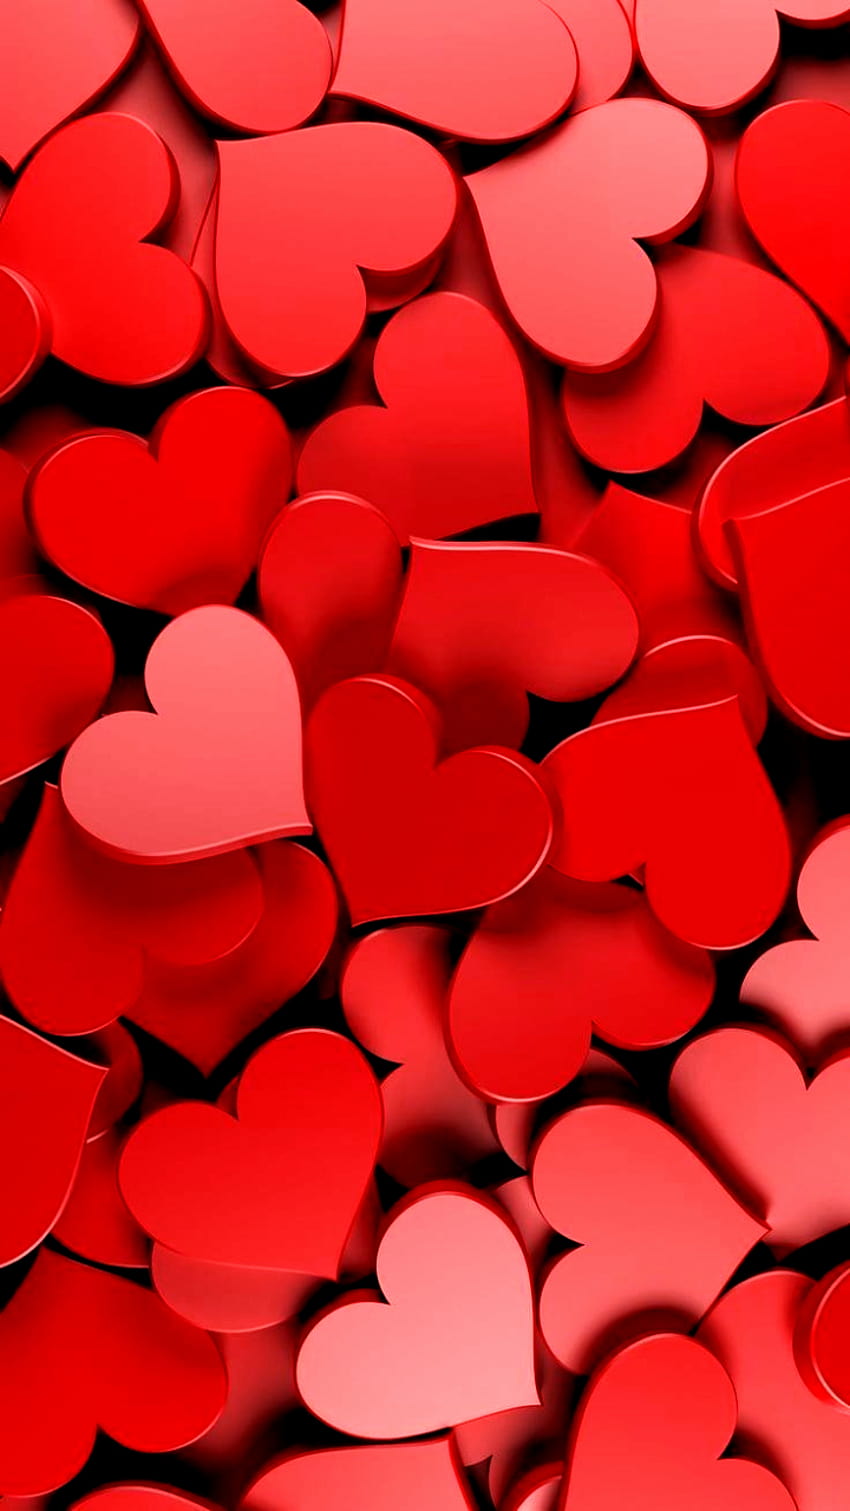 Trái tim màu đỏ nhạt tràn đầy tính nghệ thuật sẽ khiến bạn thích thú bởi tính thẩm mỹ cao của nó. Nhấn vào hình ảnh để thưởng thức những điều tuyệt vời mà trái tim đỏ nhạt có thể mang lại cho bạn!